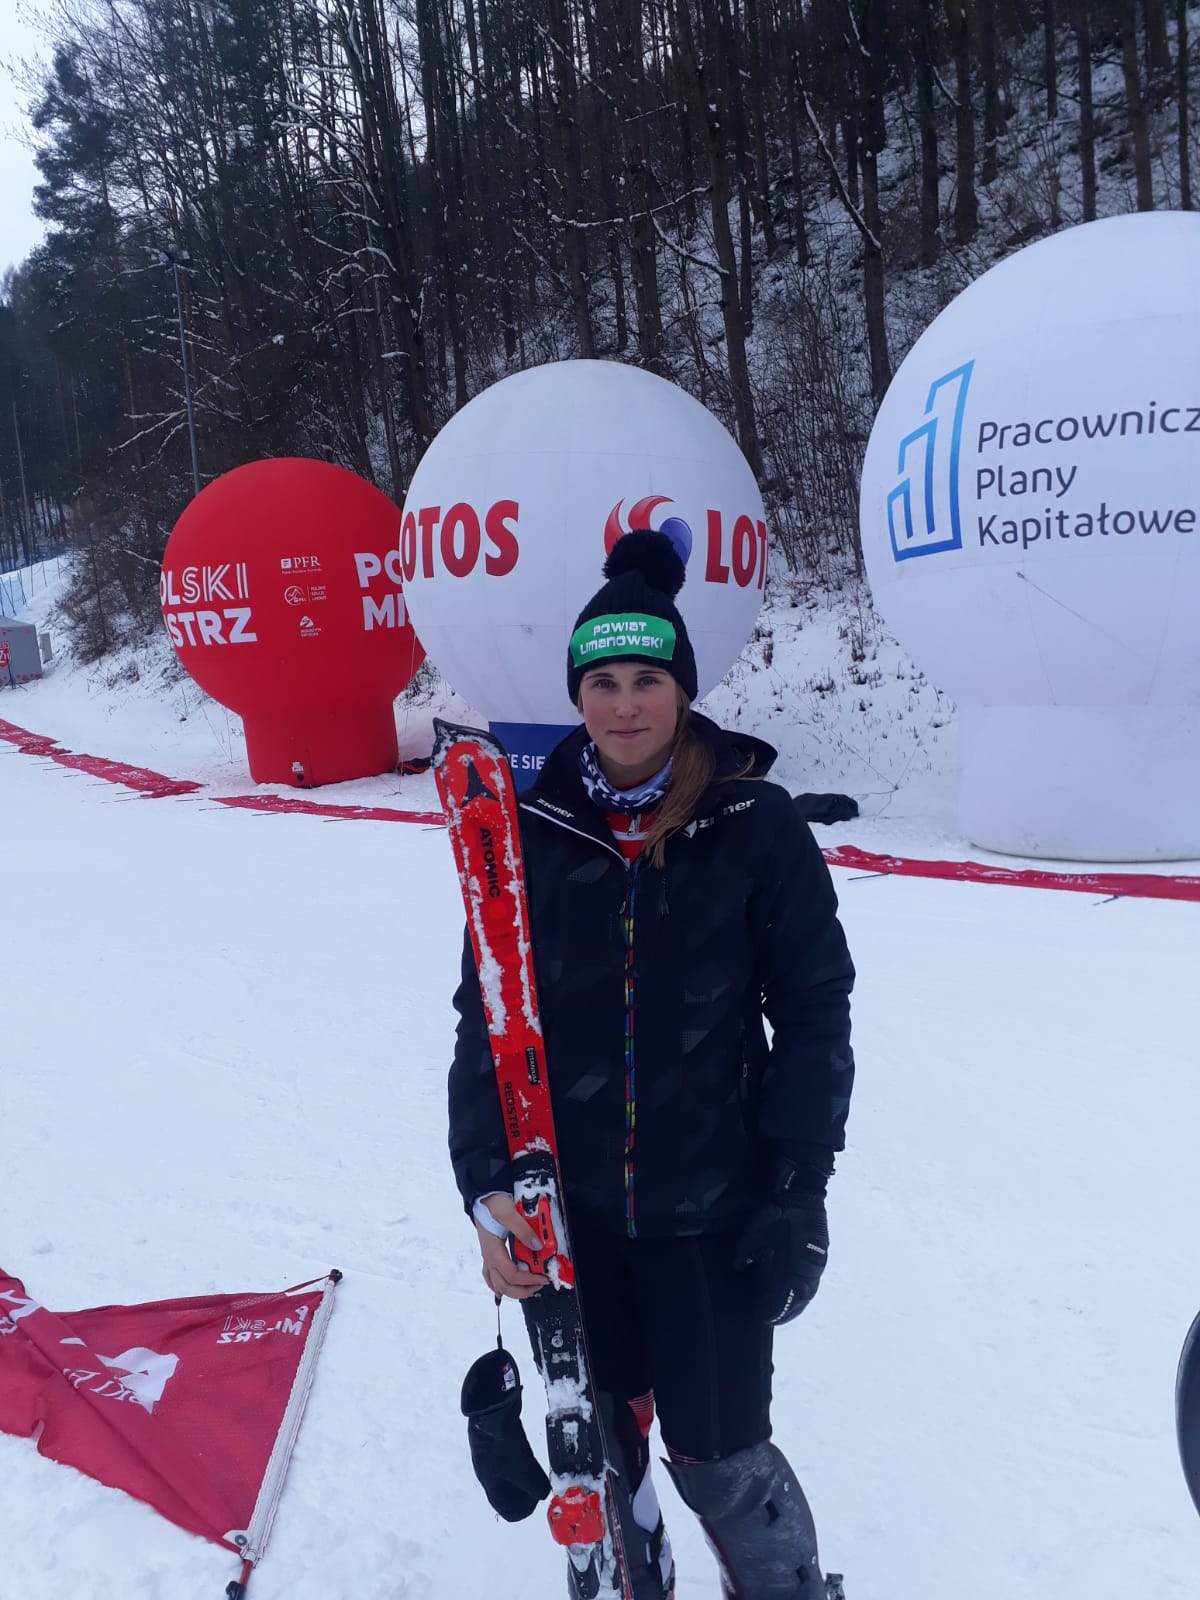 Patrycja Florek stoi z nartami na trasie zawodów.